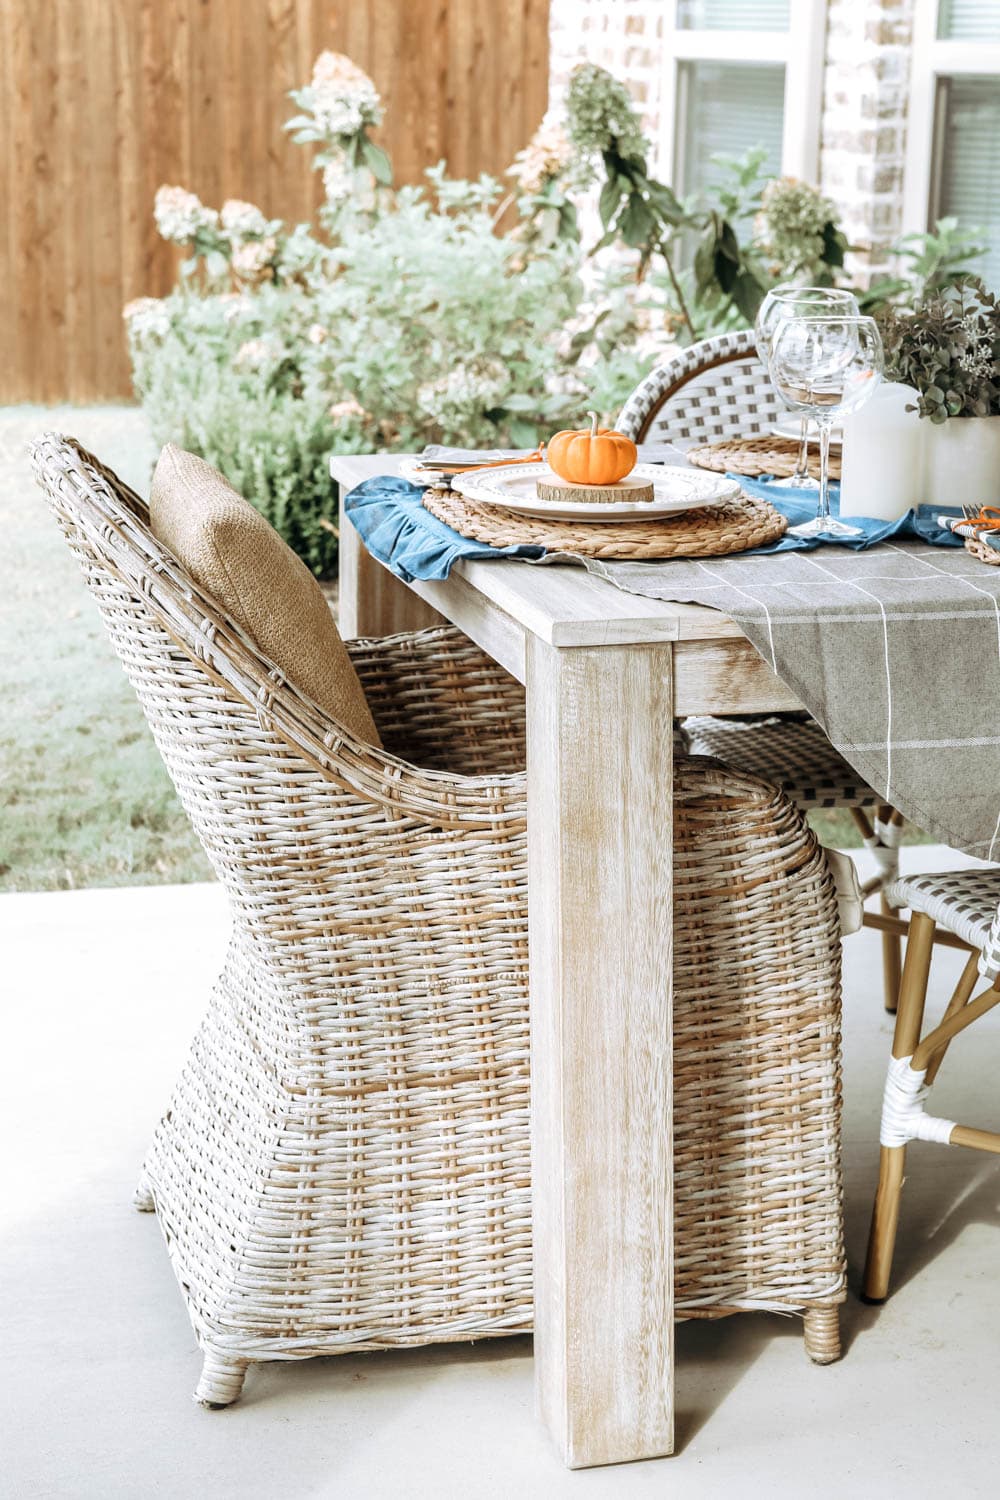 Create an outdoor harvest table with these simple decor ideas. #ABlissfulNest #falltable #falldecor